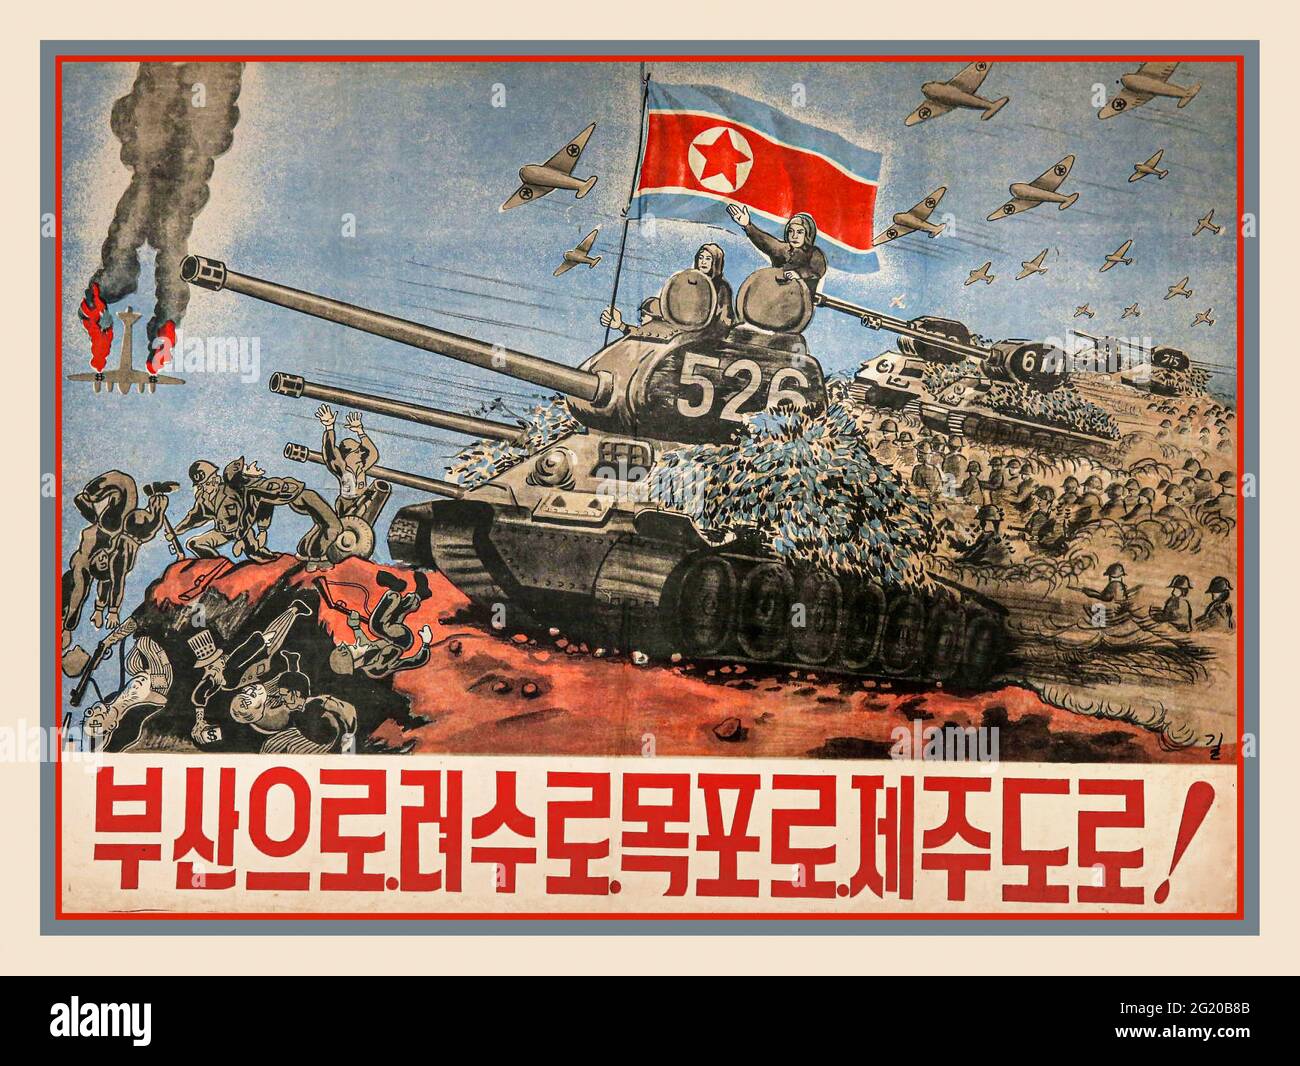 Affiche de guerre de propagande de la Corée du Nord des années 1950 battant les armées impérialistes des États-Unis 1950-1953 guerre de la péninsule coréenne. La guerre de Corée fut une guerre entre la Corée du Nord, avec le soutien militaire de la Chine et de l'Union soviétique, et la Corée du Sud, soutenue par des membres des Nations Unies aux États-Unis. La guerre a commencé le 25 juin 1950 lorsque la Corée du Nord a envahi la Corée du Sud à la suite d'affrontements le long de la frontière et d'insurrections dans le sud. Banque D'Images